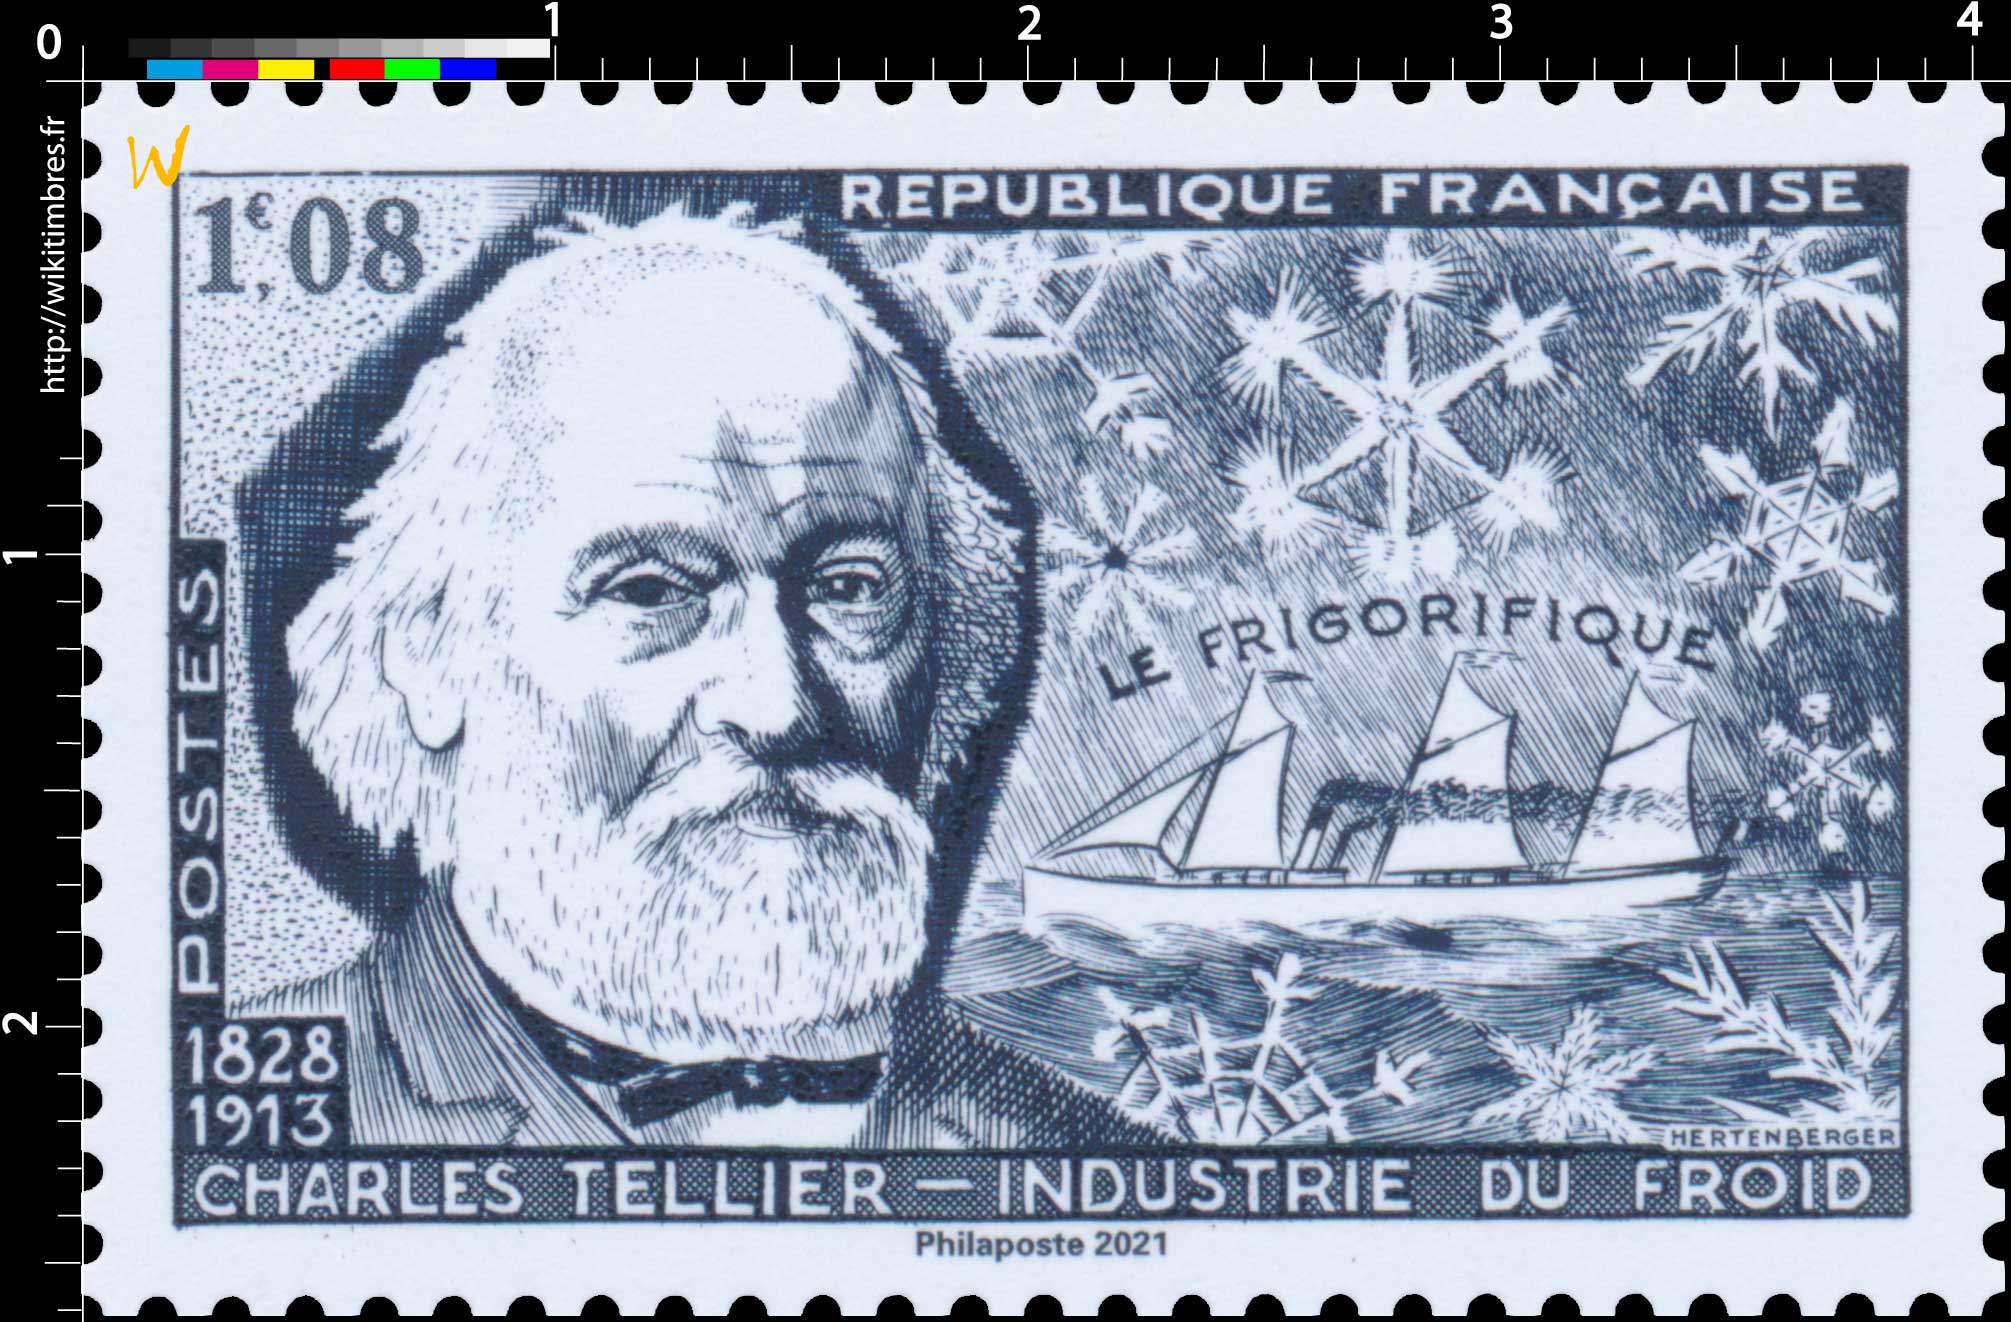 2021 Patrimoine de France - LE FRIGORIFIQUE CHARLES TELLIER 1828-1913 INDUSTRIE DU FROID